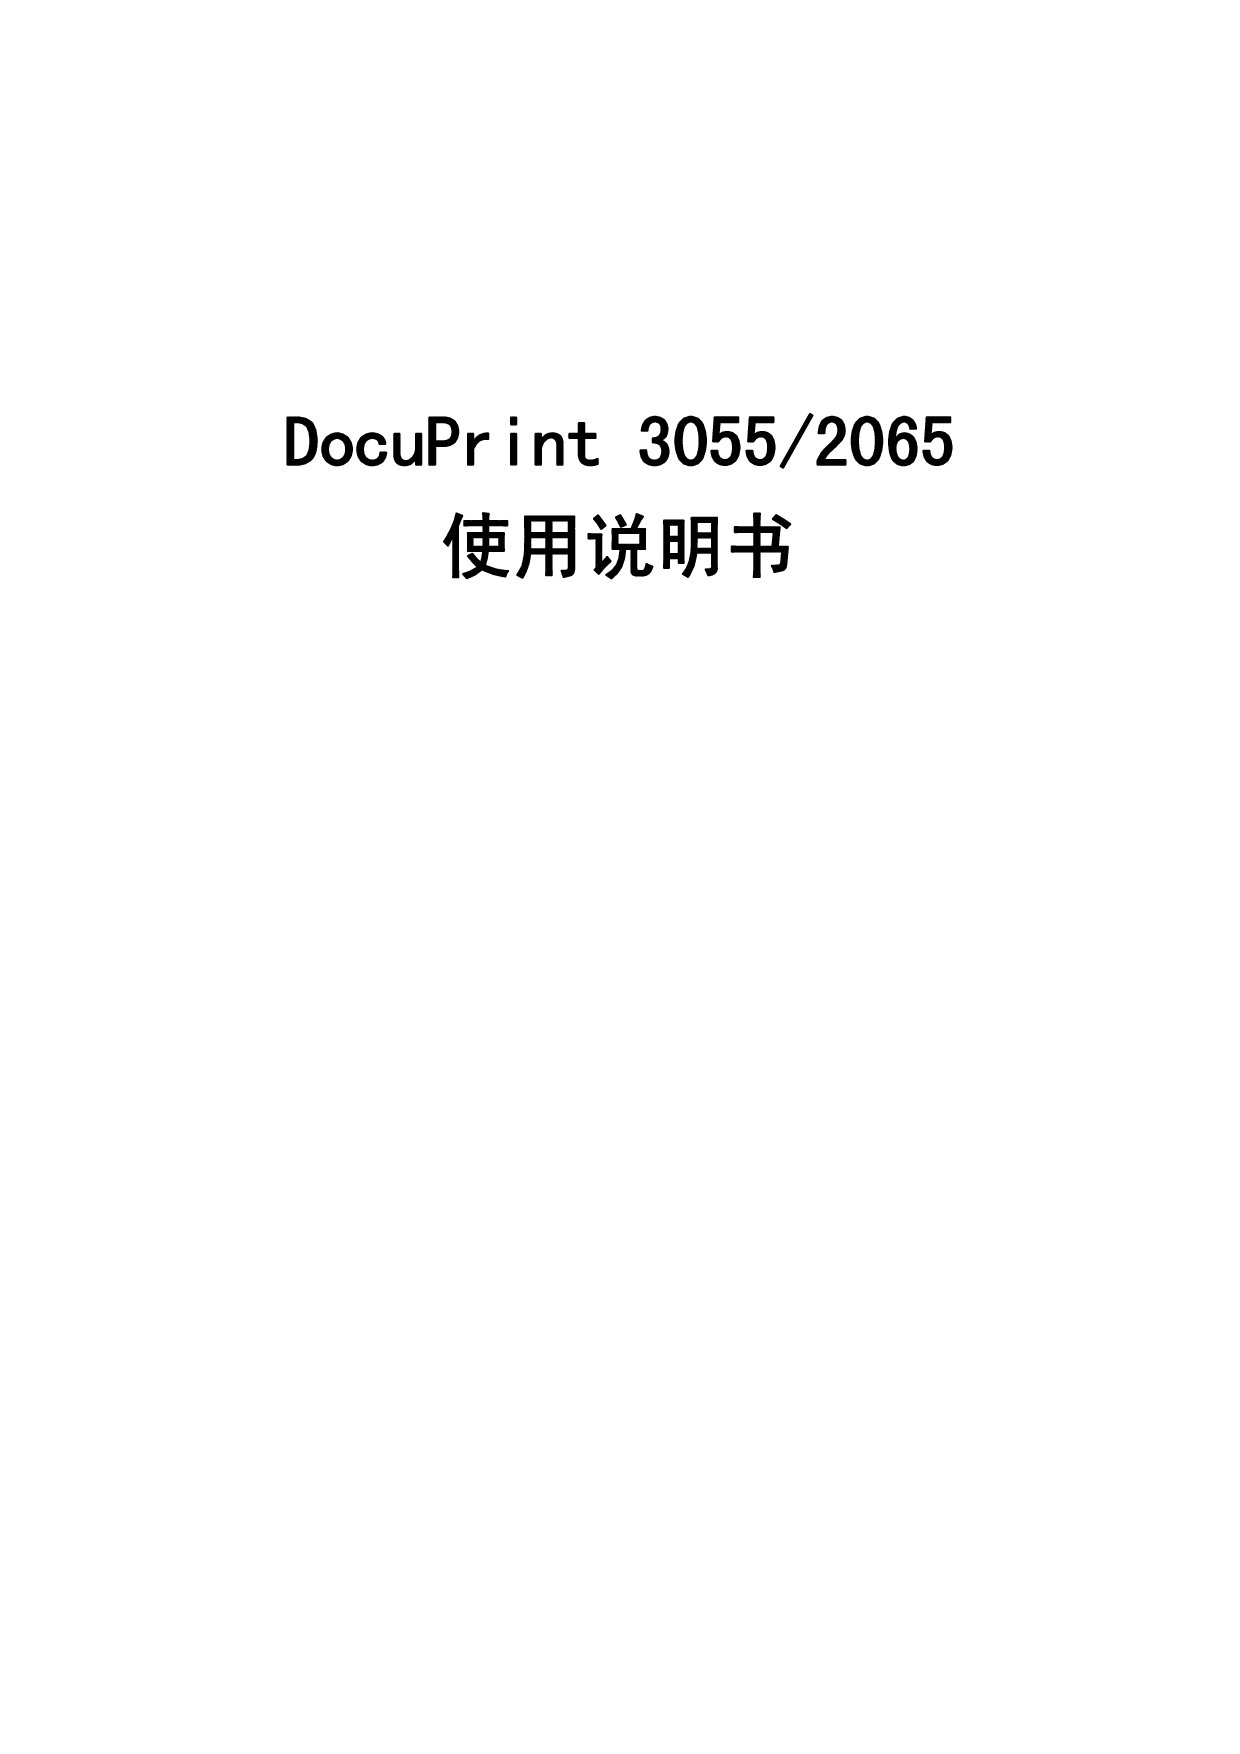 富士施乐 Fuji Xerox DocuPrint 2065 使用说明书 封面